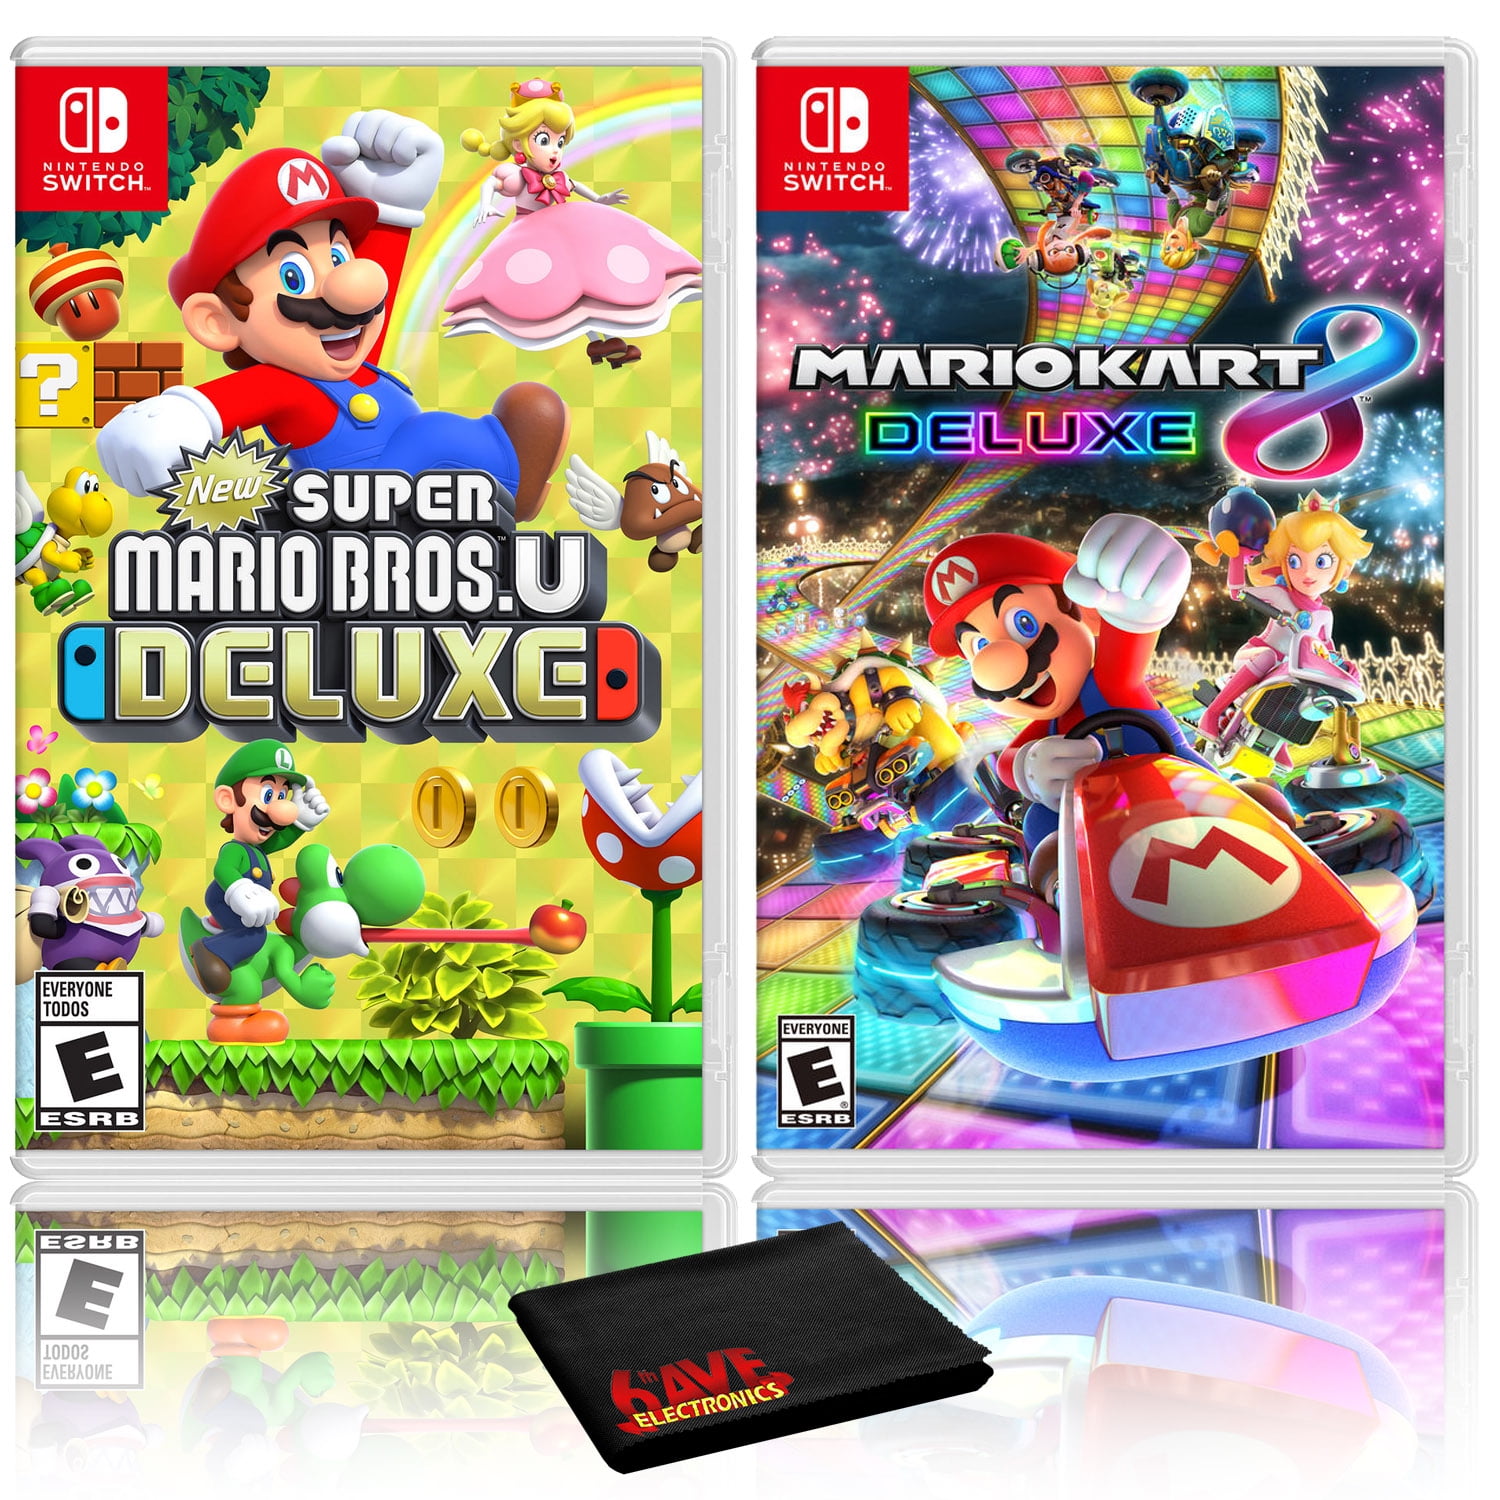 New Super Mario Bros. U Deluxe + Mario Kart 8 Deluxe, Nintendo Switch -  Walmart.com